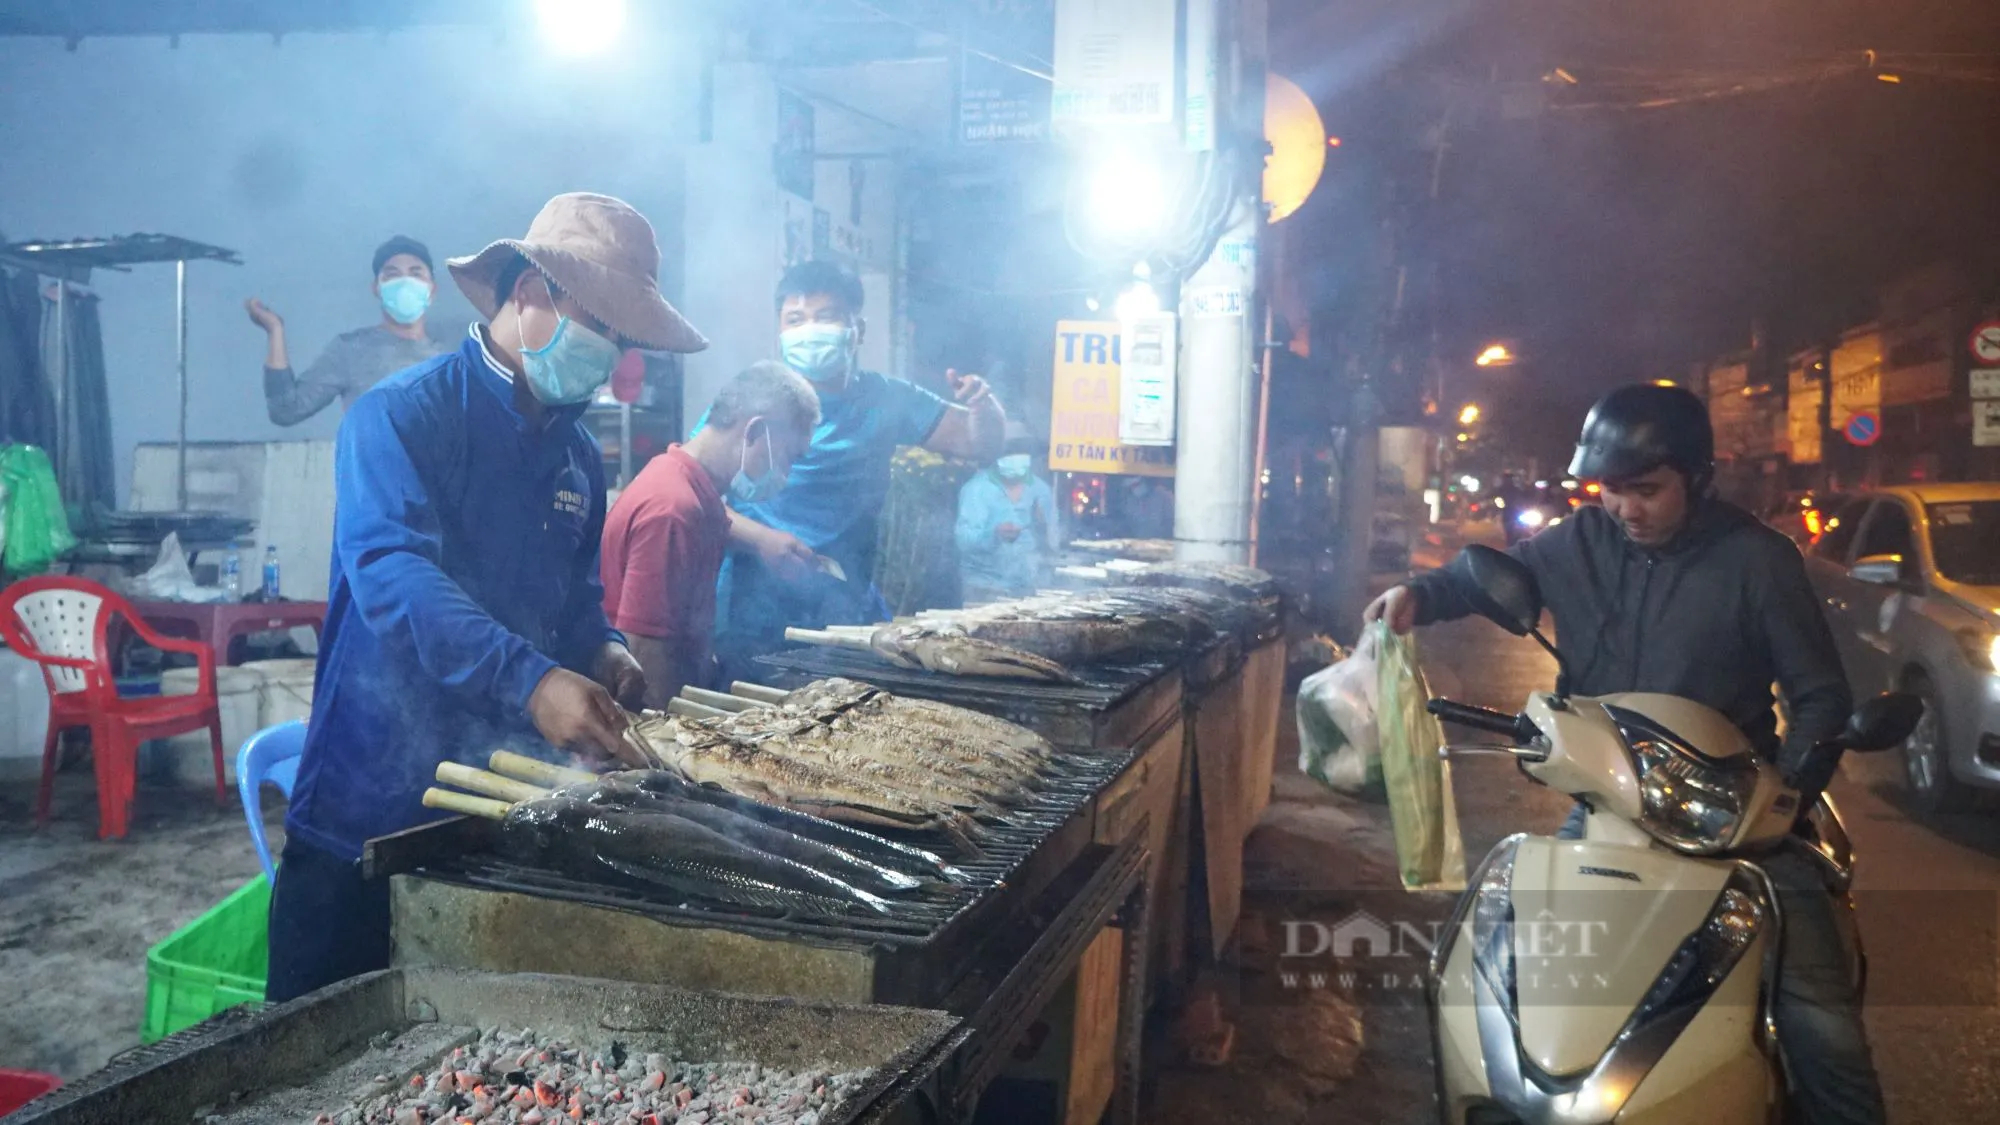 Sáng đêm nướng cá lóc bán ngày vía Thần Tài ở TP.HCM, có tiệm huy động 40 người nướng hàng tấn cá- Ảnh 7.